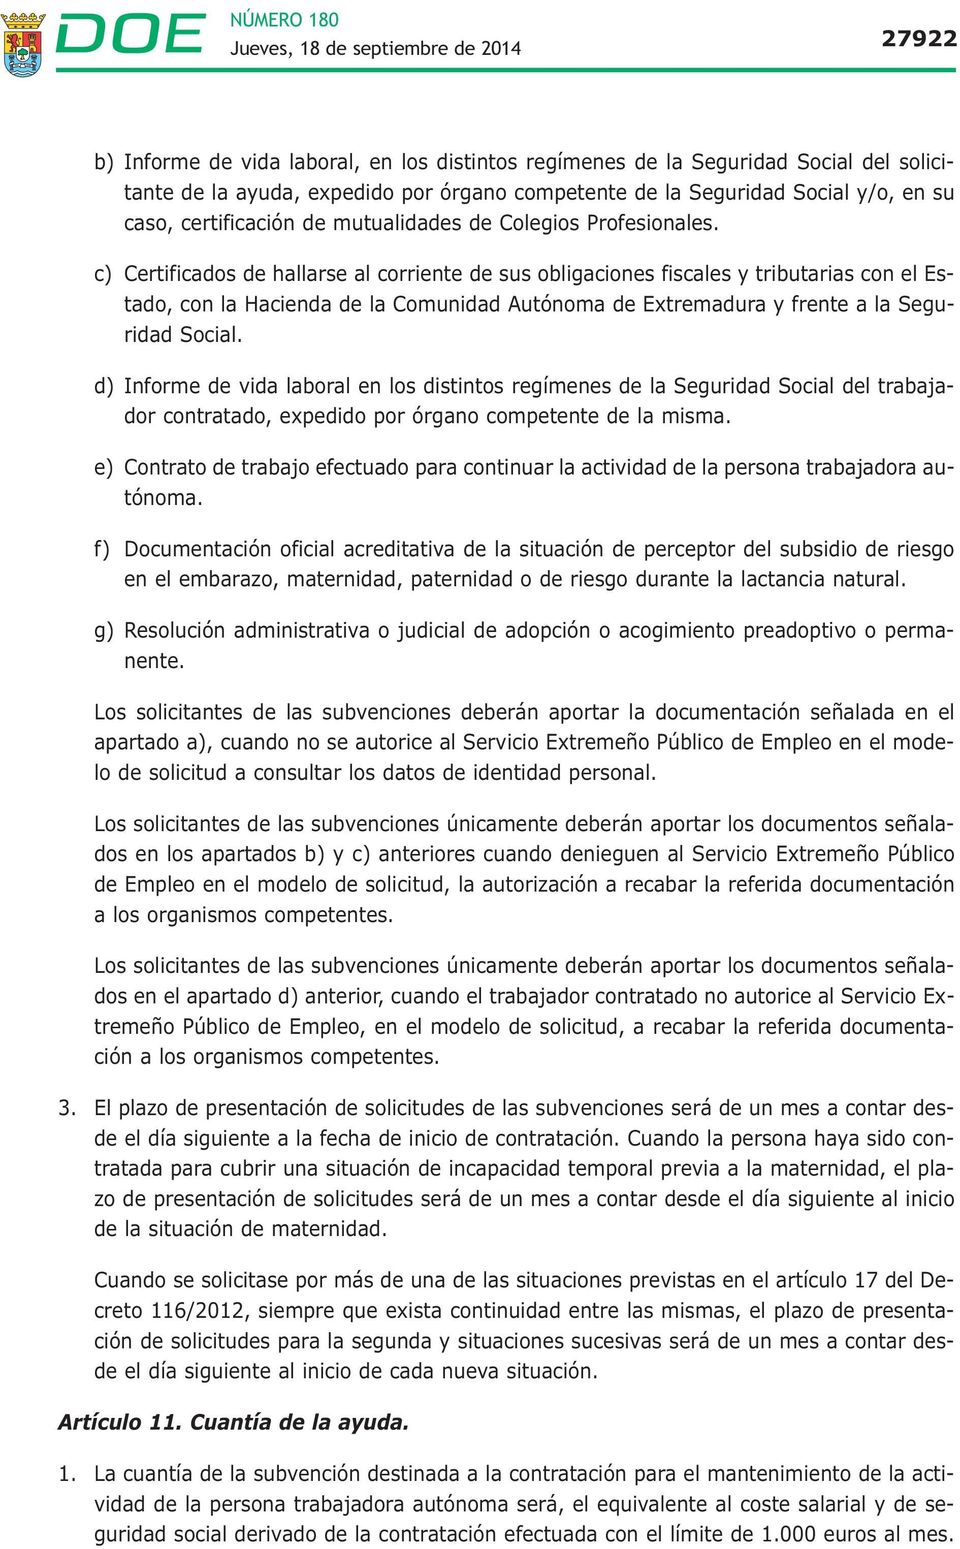 c) Certificados de hallarse al corriente de sus obligaciones fiscales y tributarias con el Estado, con la Hacienda de la Comunidad Autónoma de Extremadura y frente a la Seguridad Social.